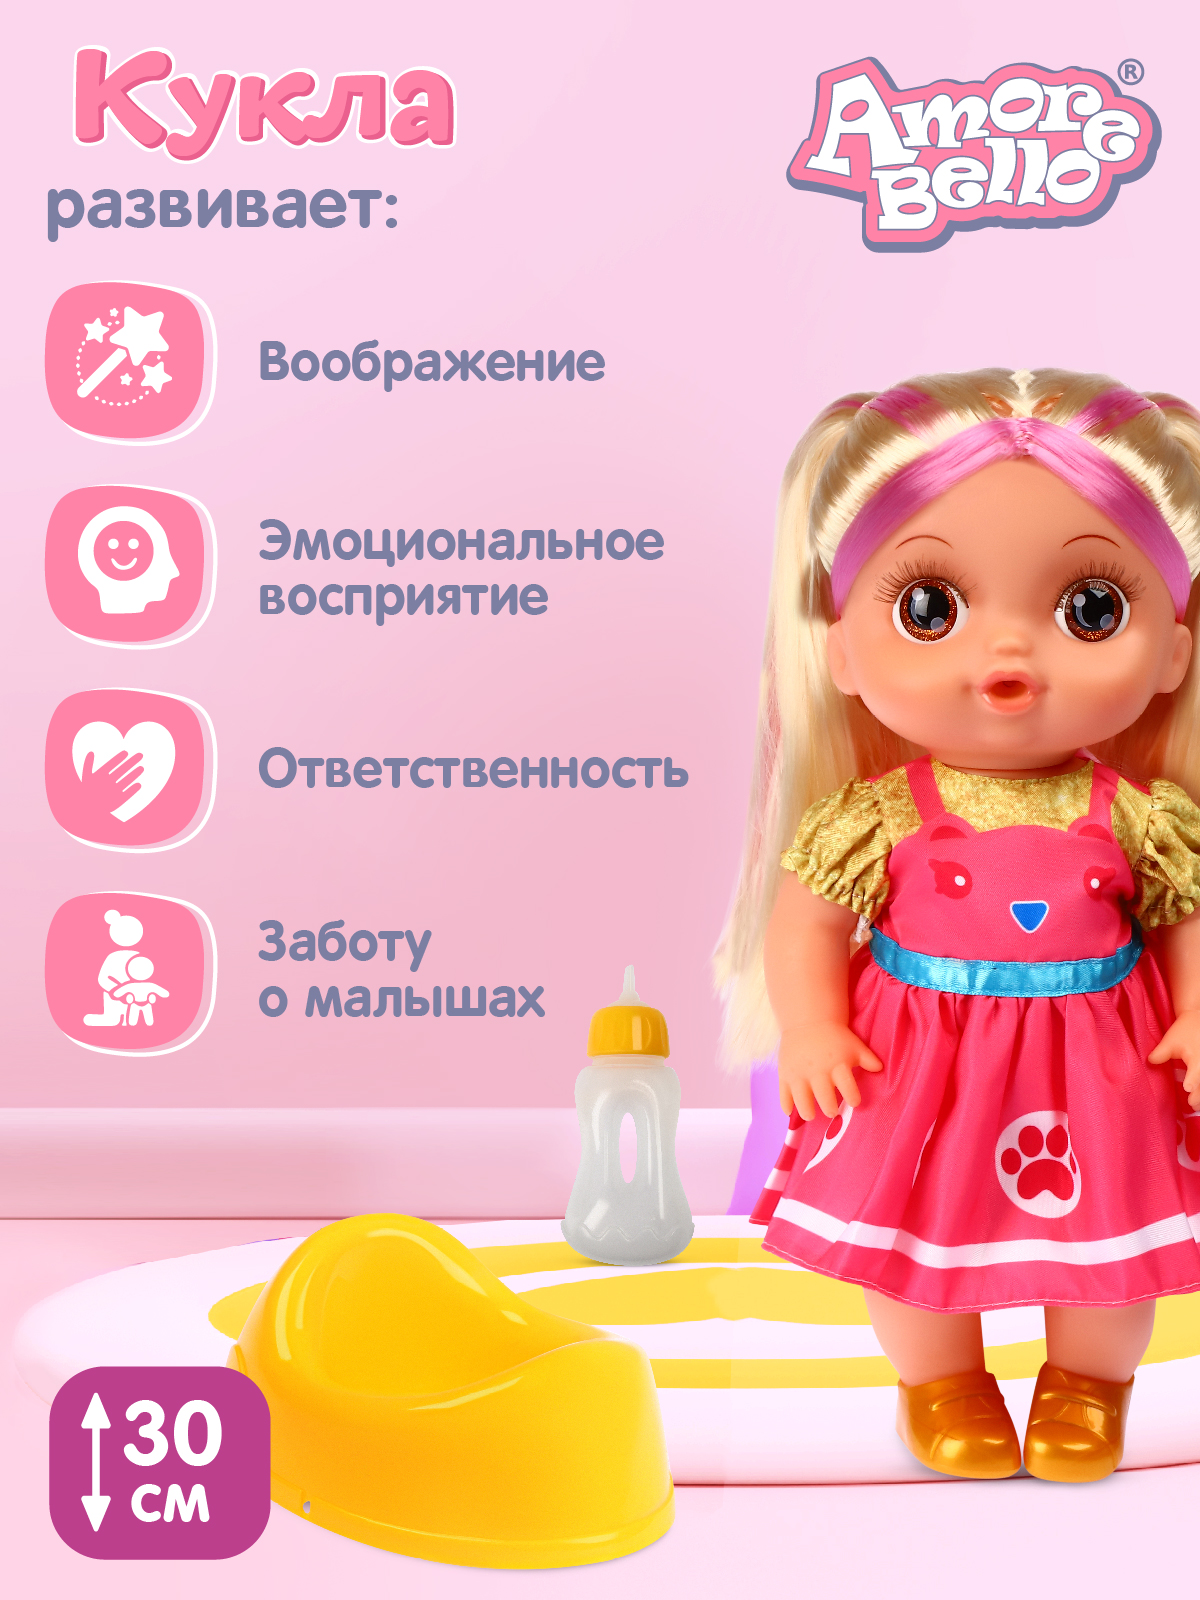 Кукла AMORE BELLO С розовыми волосами бутылочка желтый горшок соска JB0211646 - фото 4